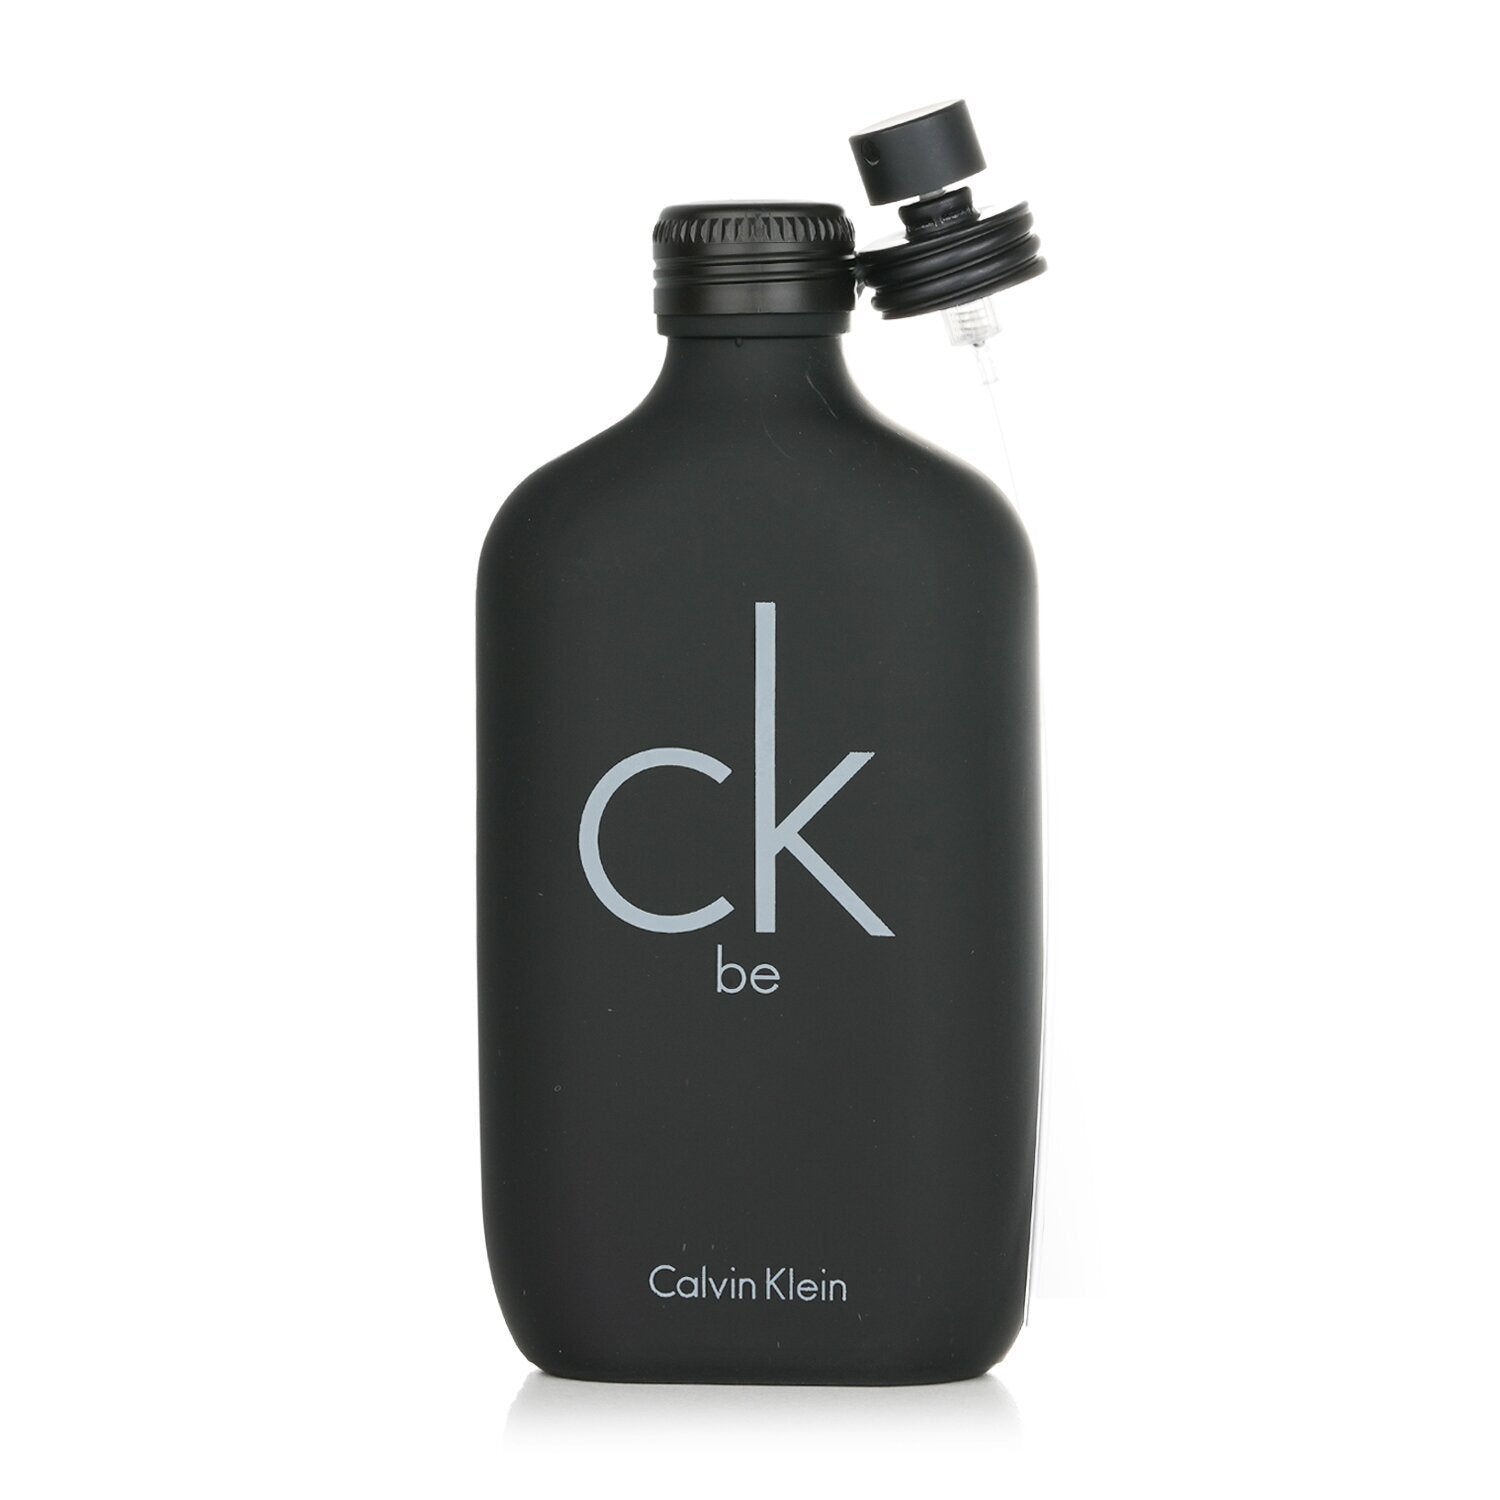 Calvin Klein Be Eau de Toilette Spray 200mL